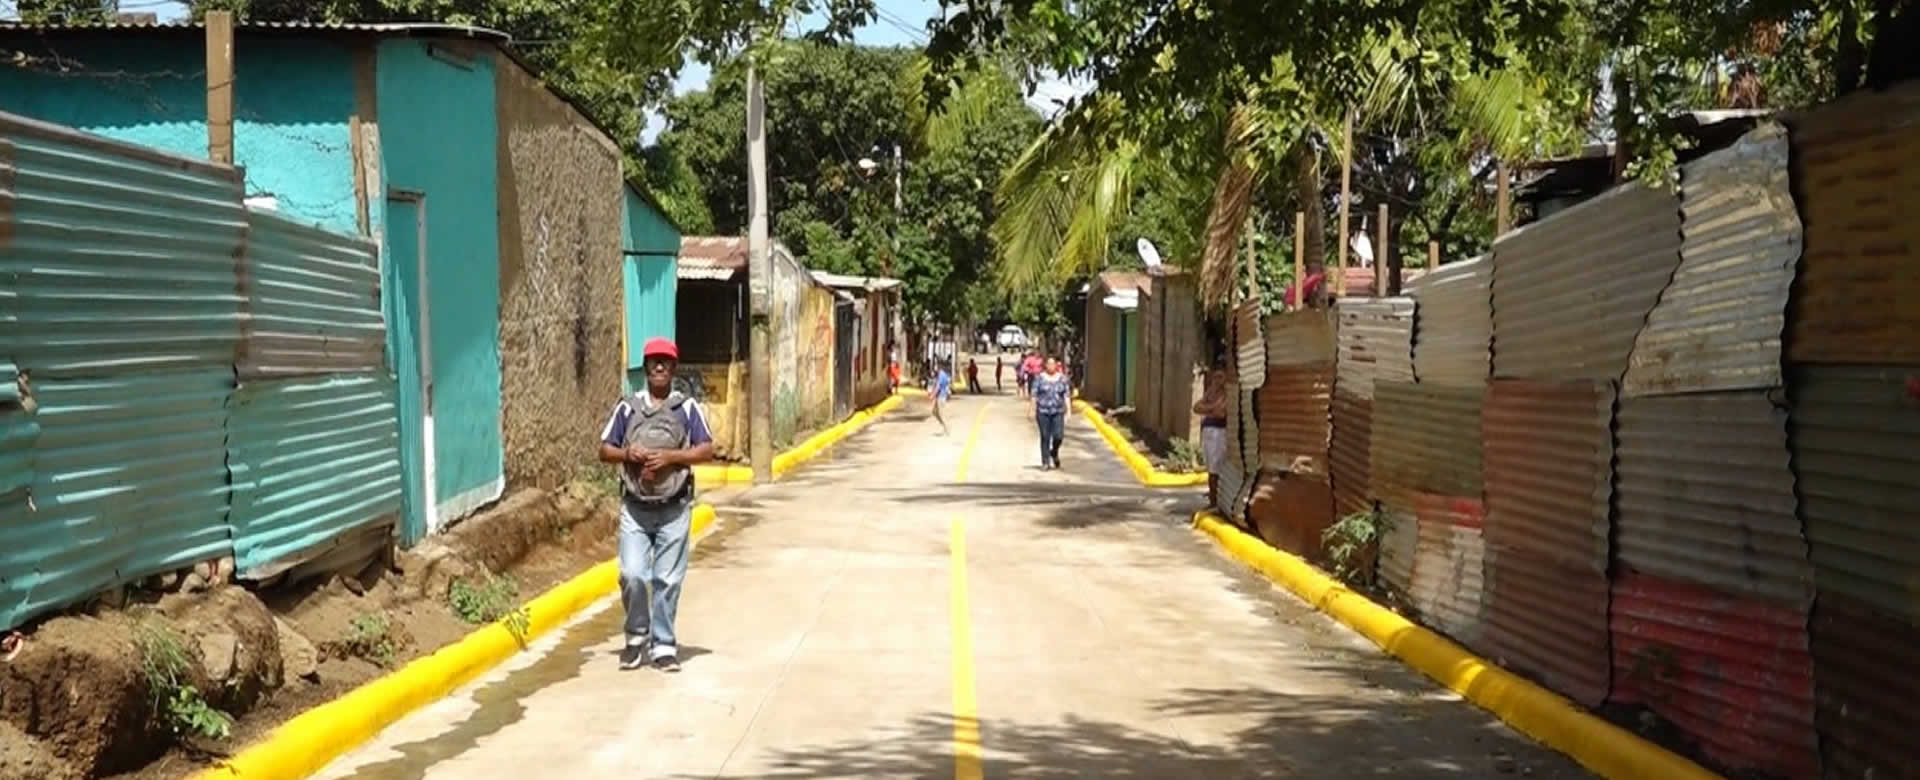 Alcaldía de Managua inaugura obra de mejoramiento vial en el distrito V